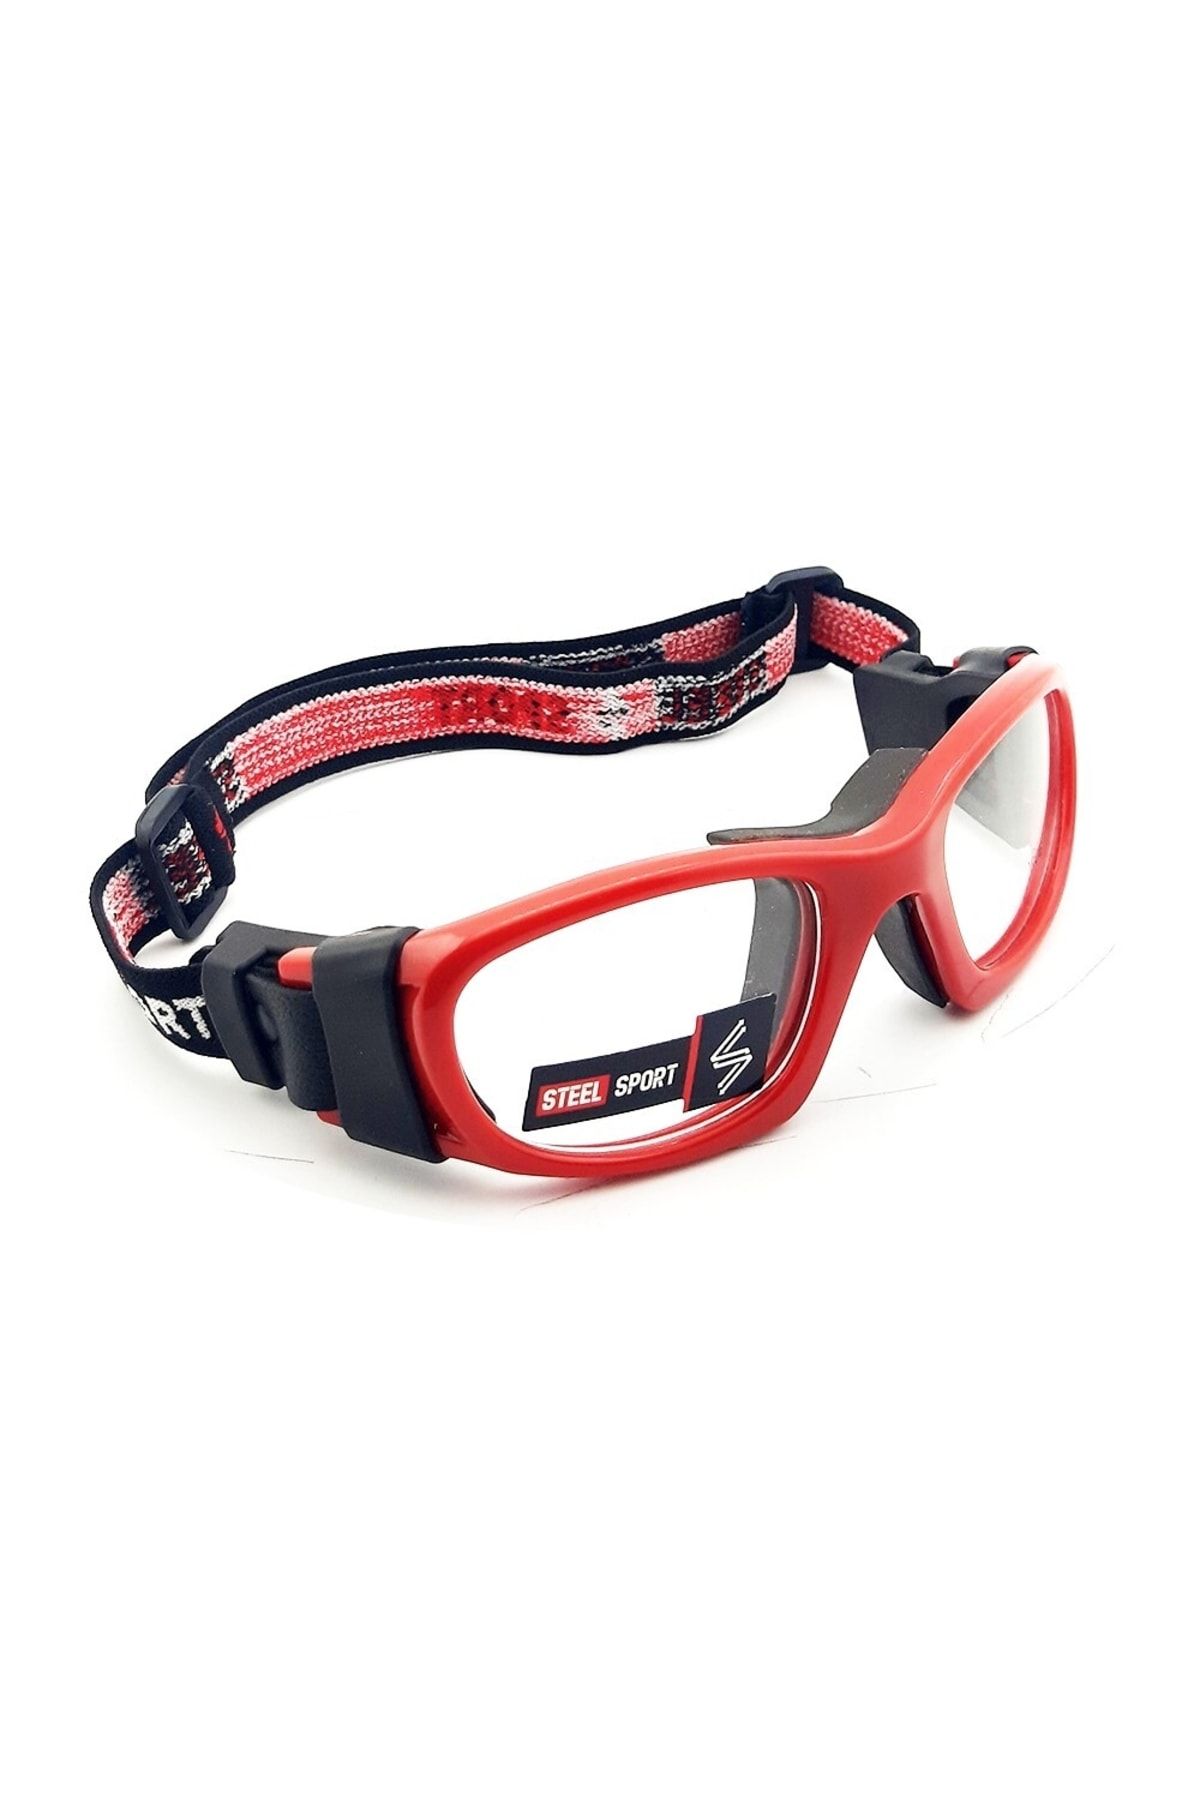 Steel Sport Champion Parlak Kırmızı - Siyah Iç Ped [14 Yaşa Kadar] Numaralı Olabilen Sporcu Gözlüğü